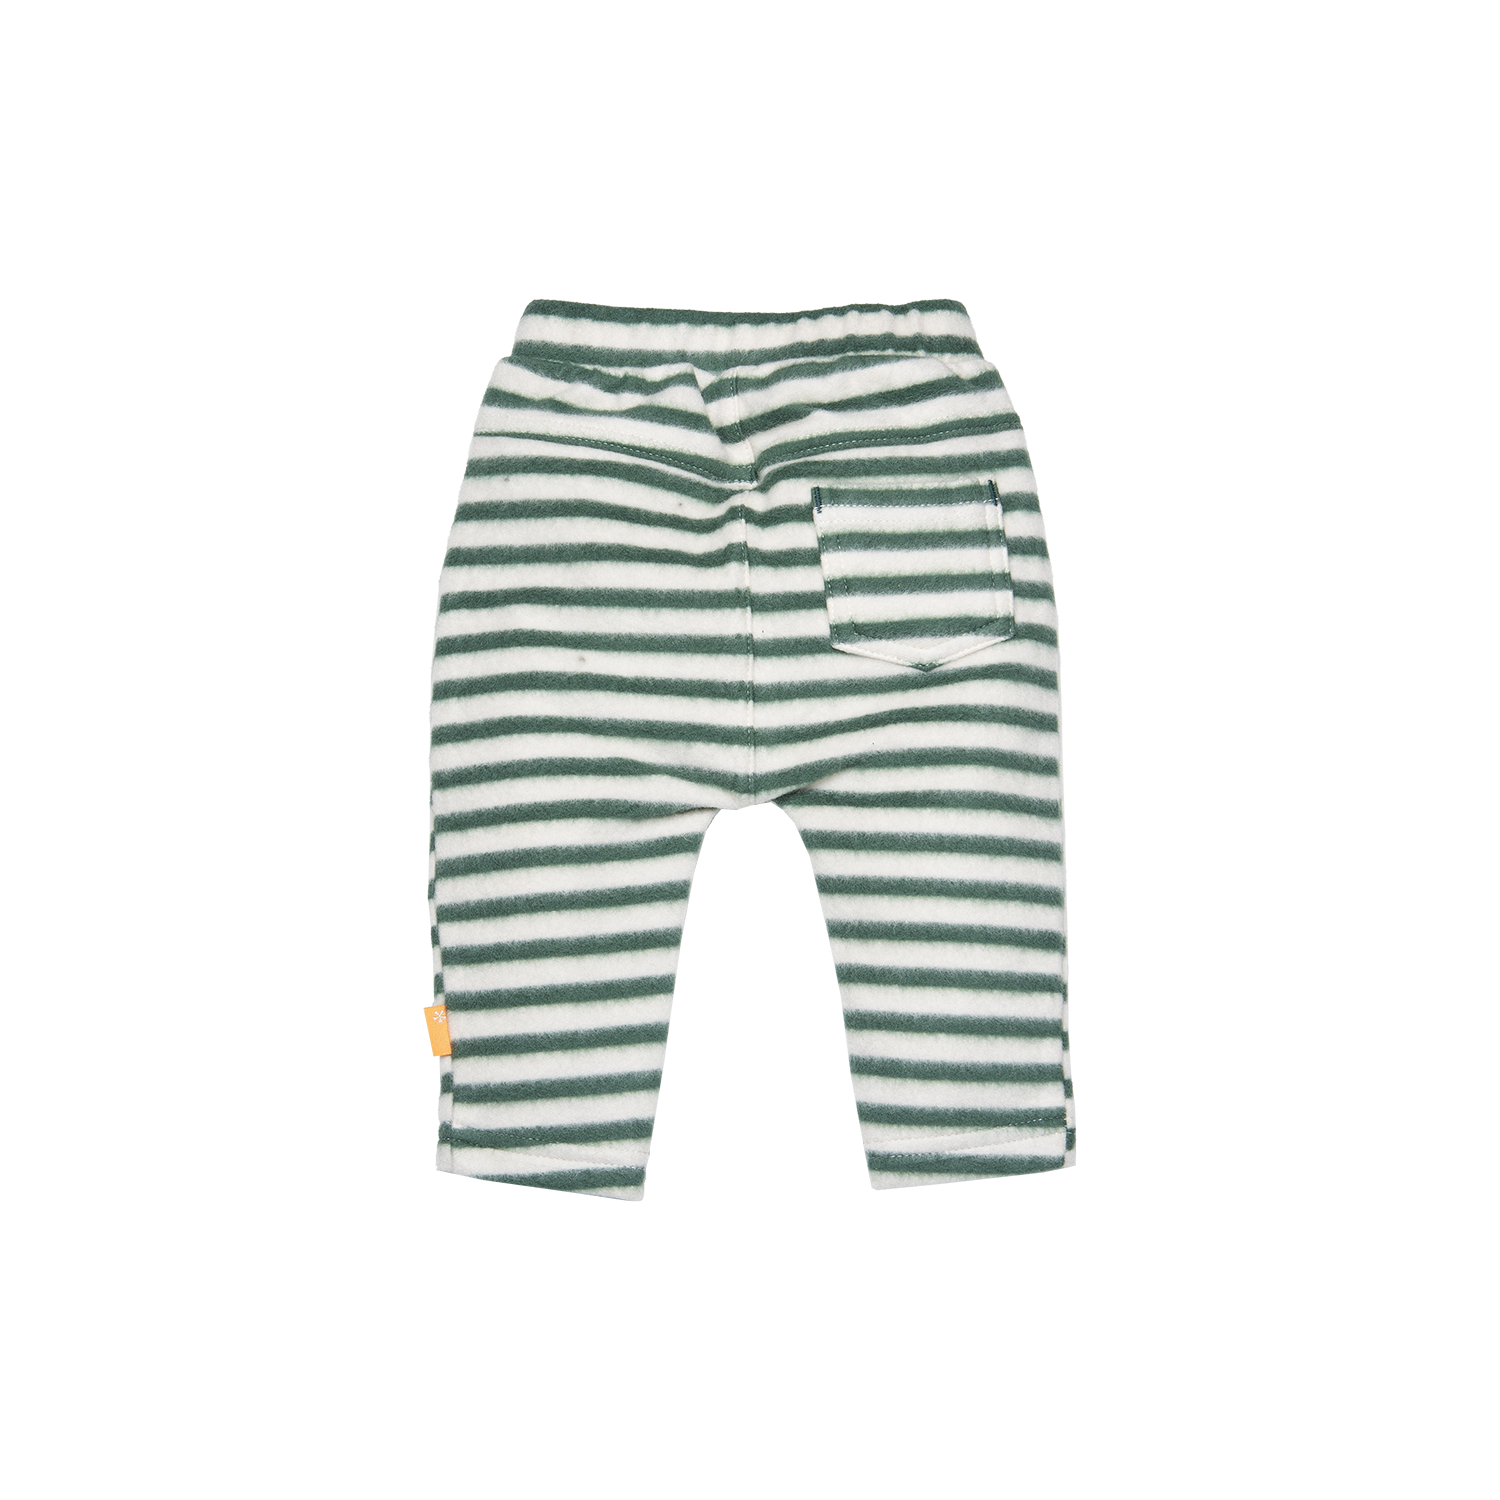 Jongens Pants Striped van B.E.S.S. in de kleur Green in maat 68.